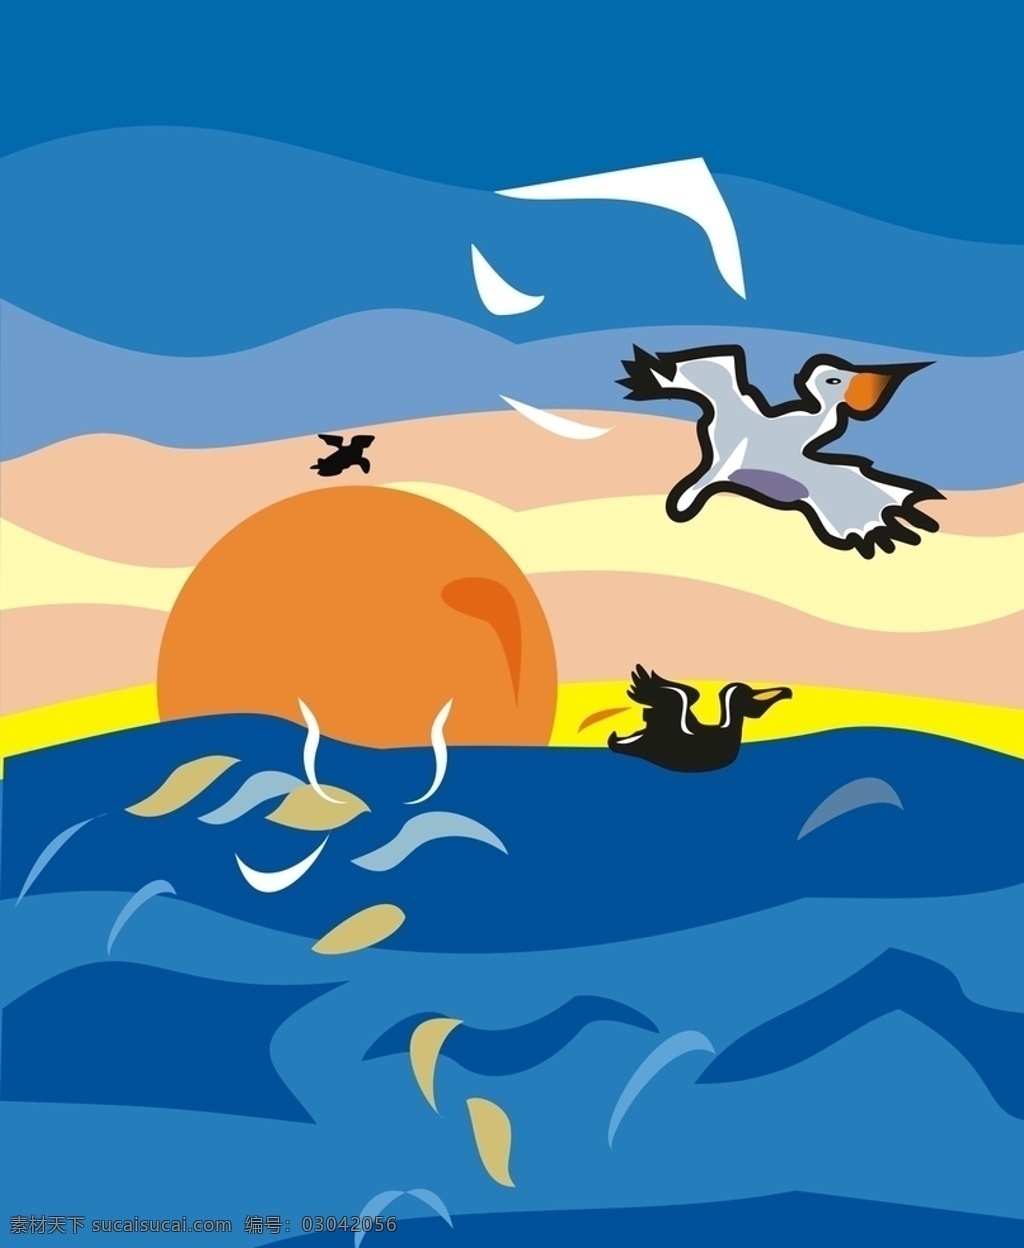 海上日出图片 海上日出 大海 日出 海燕 波浪 太阳 鸟 动漫动画 动漫人物